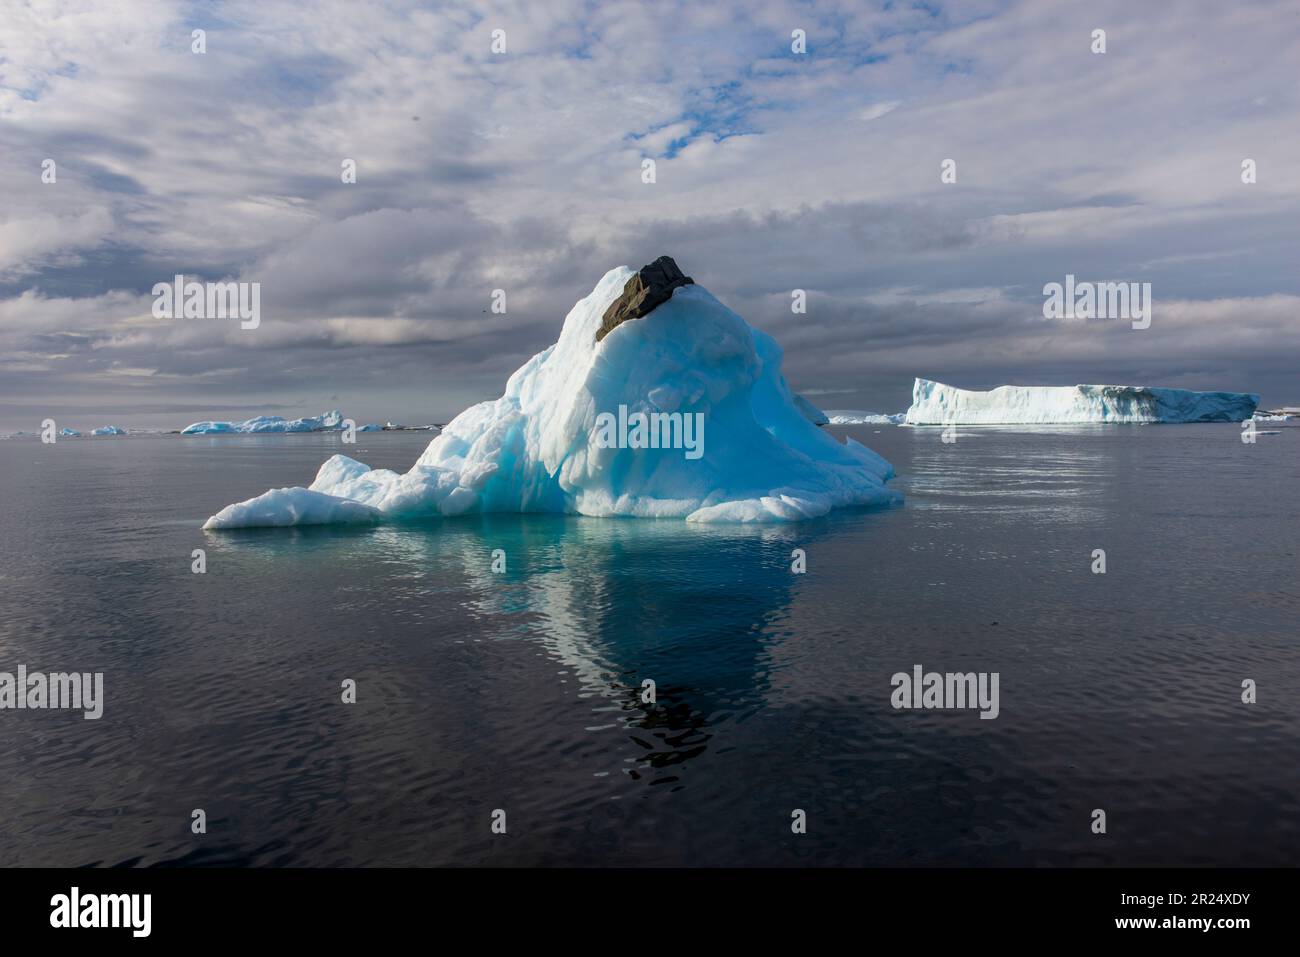 Passaggio francese, Antartide. Una roccia scorre attraverso la cima di un iceberg, una testimonianza del cambiamento climatico e dell'aria più calda. Foto Stock